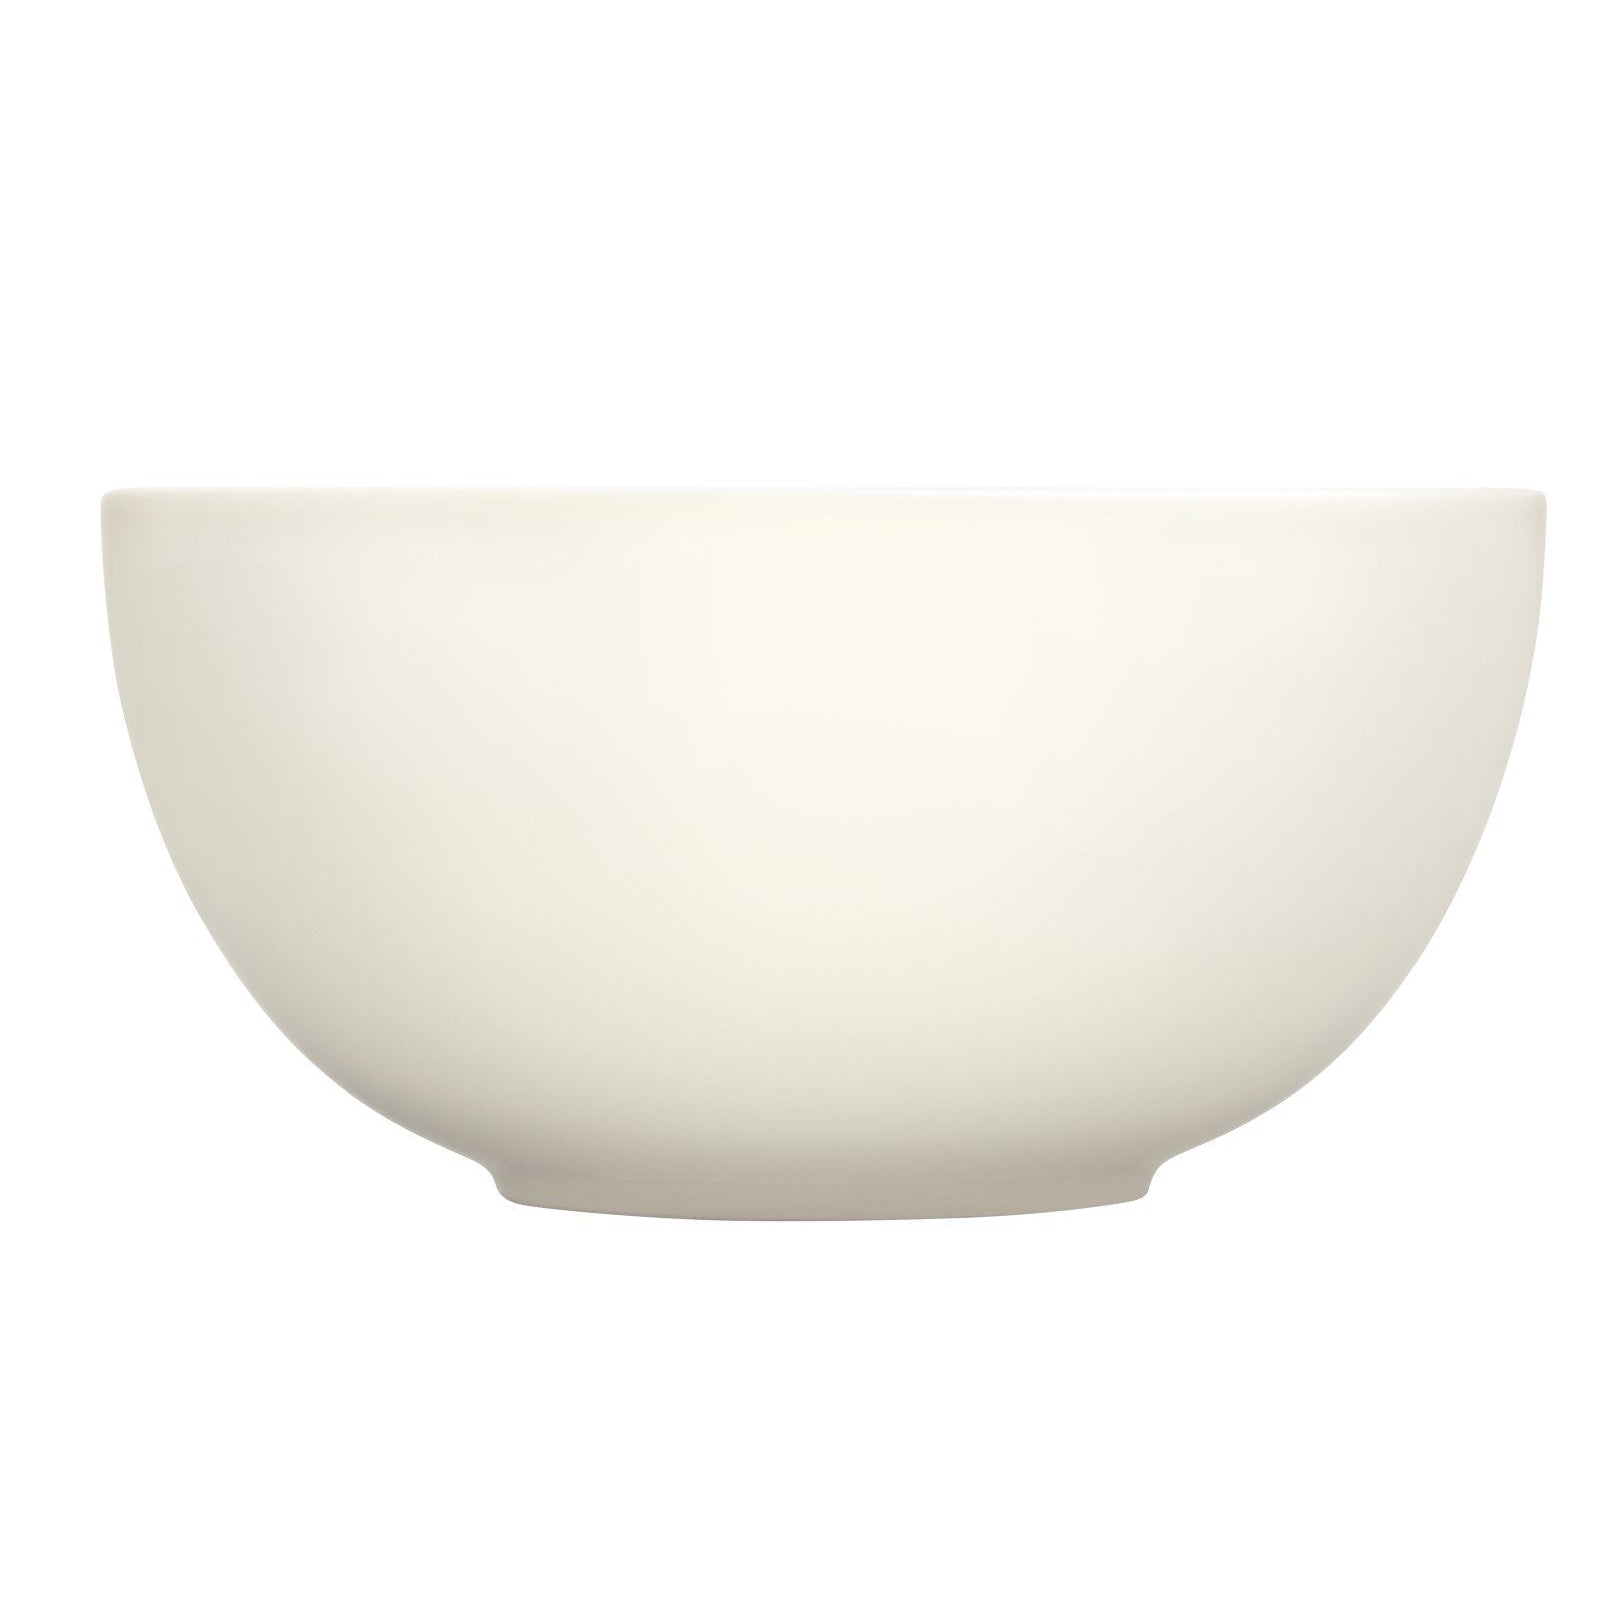 Iittala Teema Bowl White, 3.4L